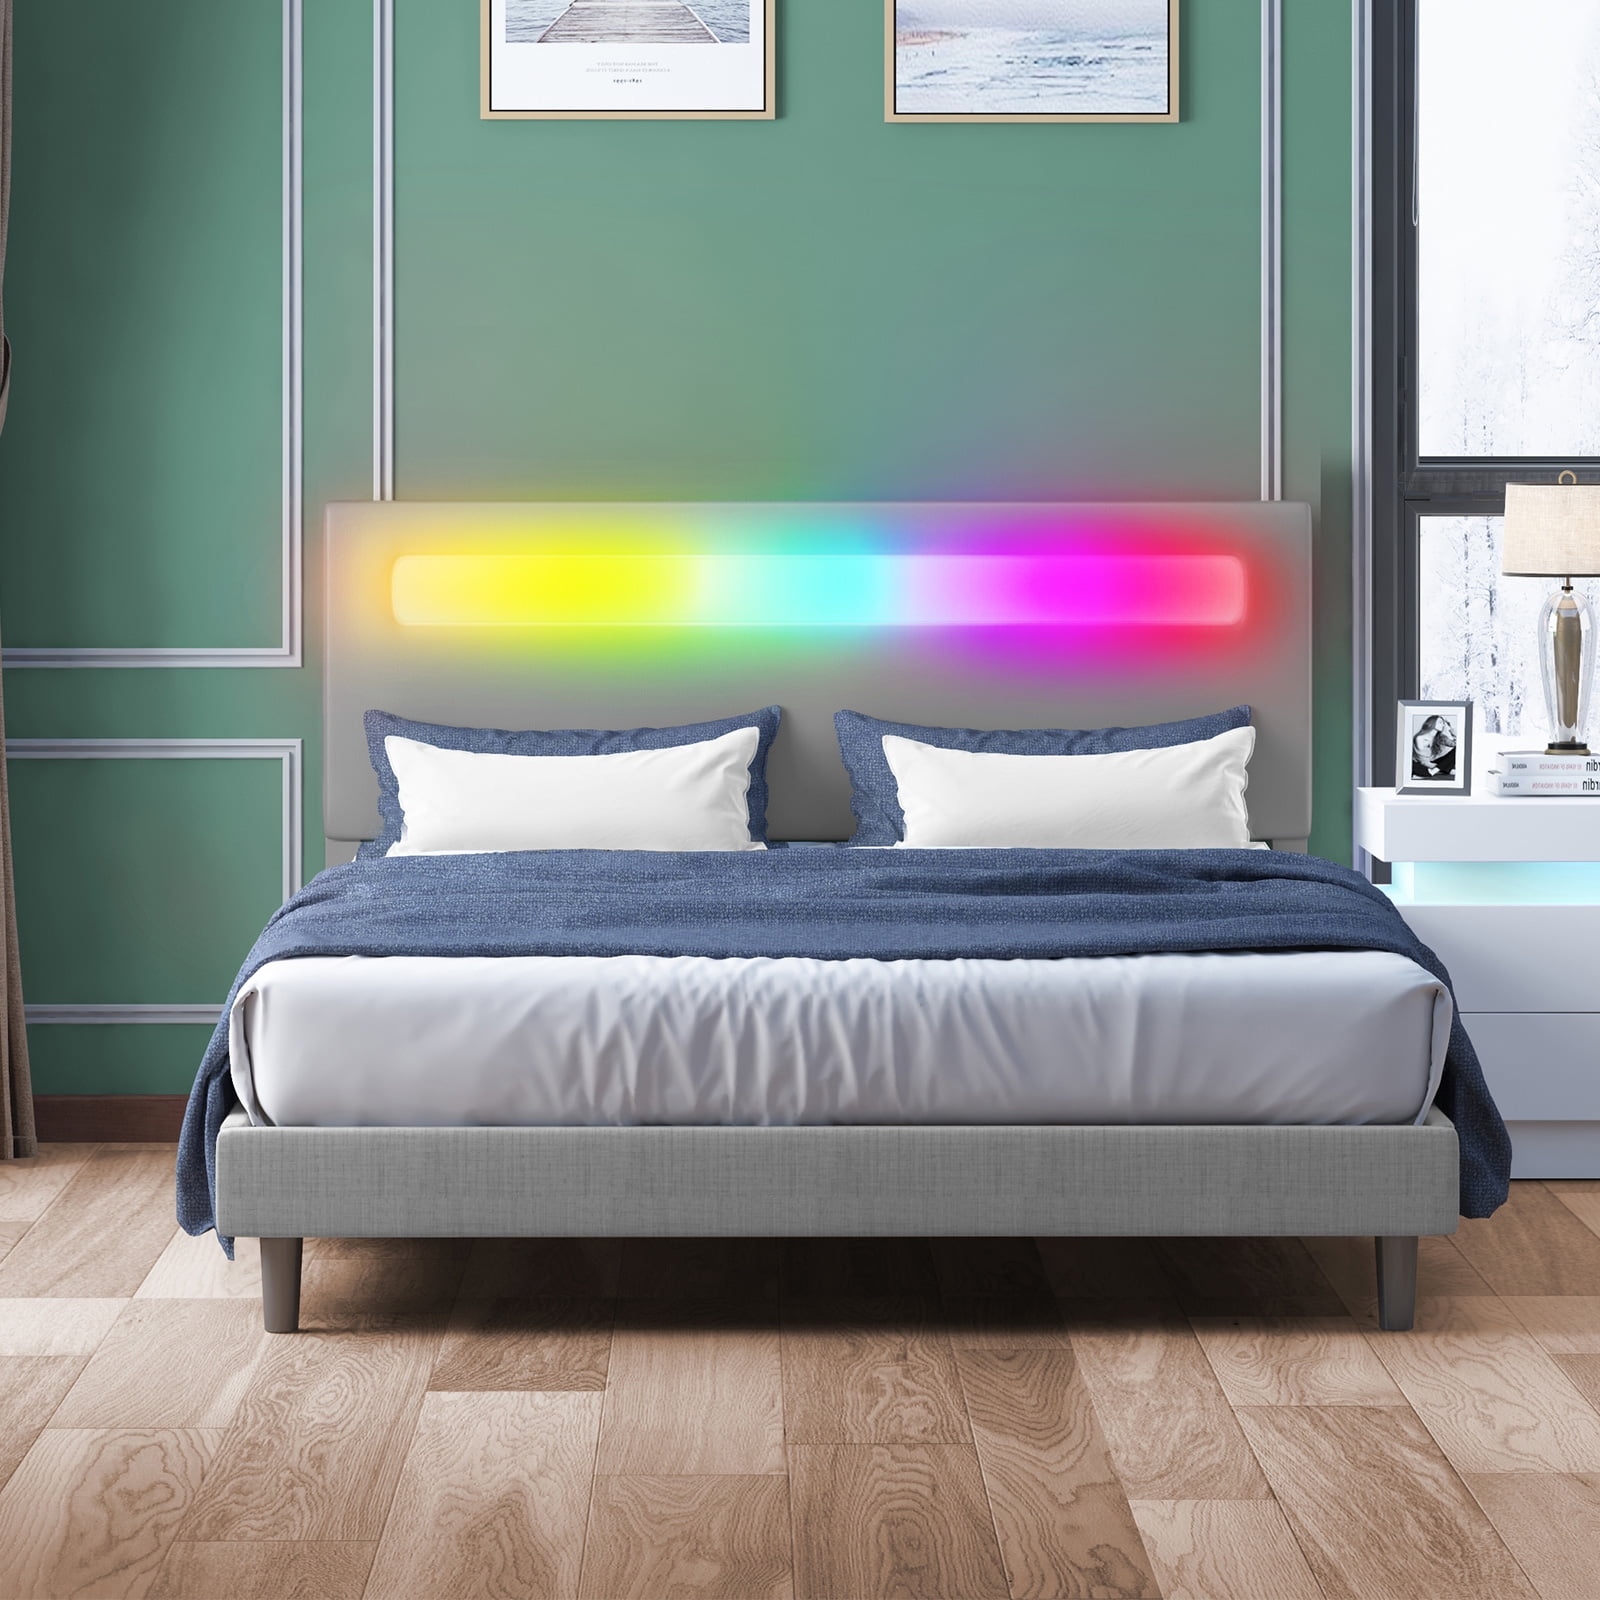 ZAFLY Platform Bed Frame with Smart RGB LED Light Bar, Full Size Bed ...